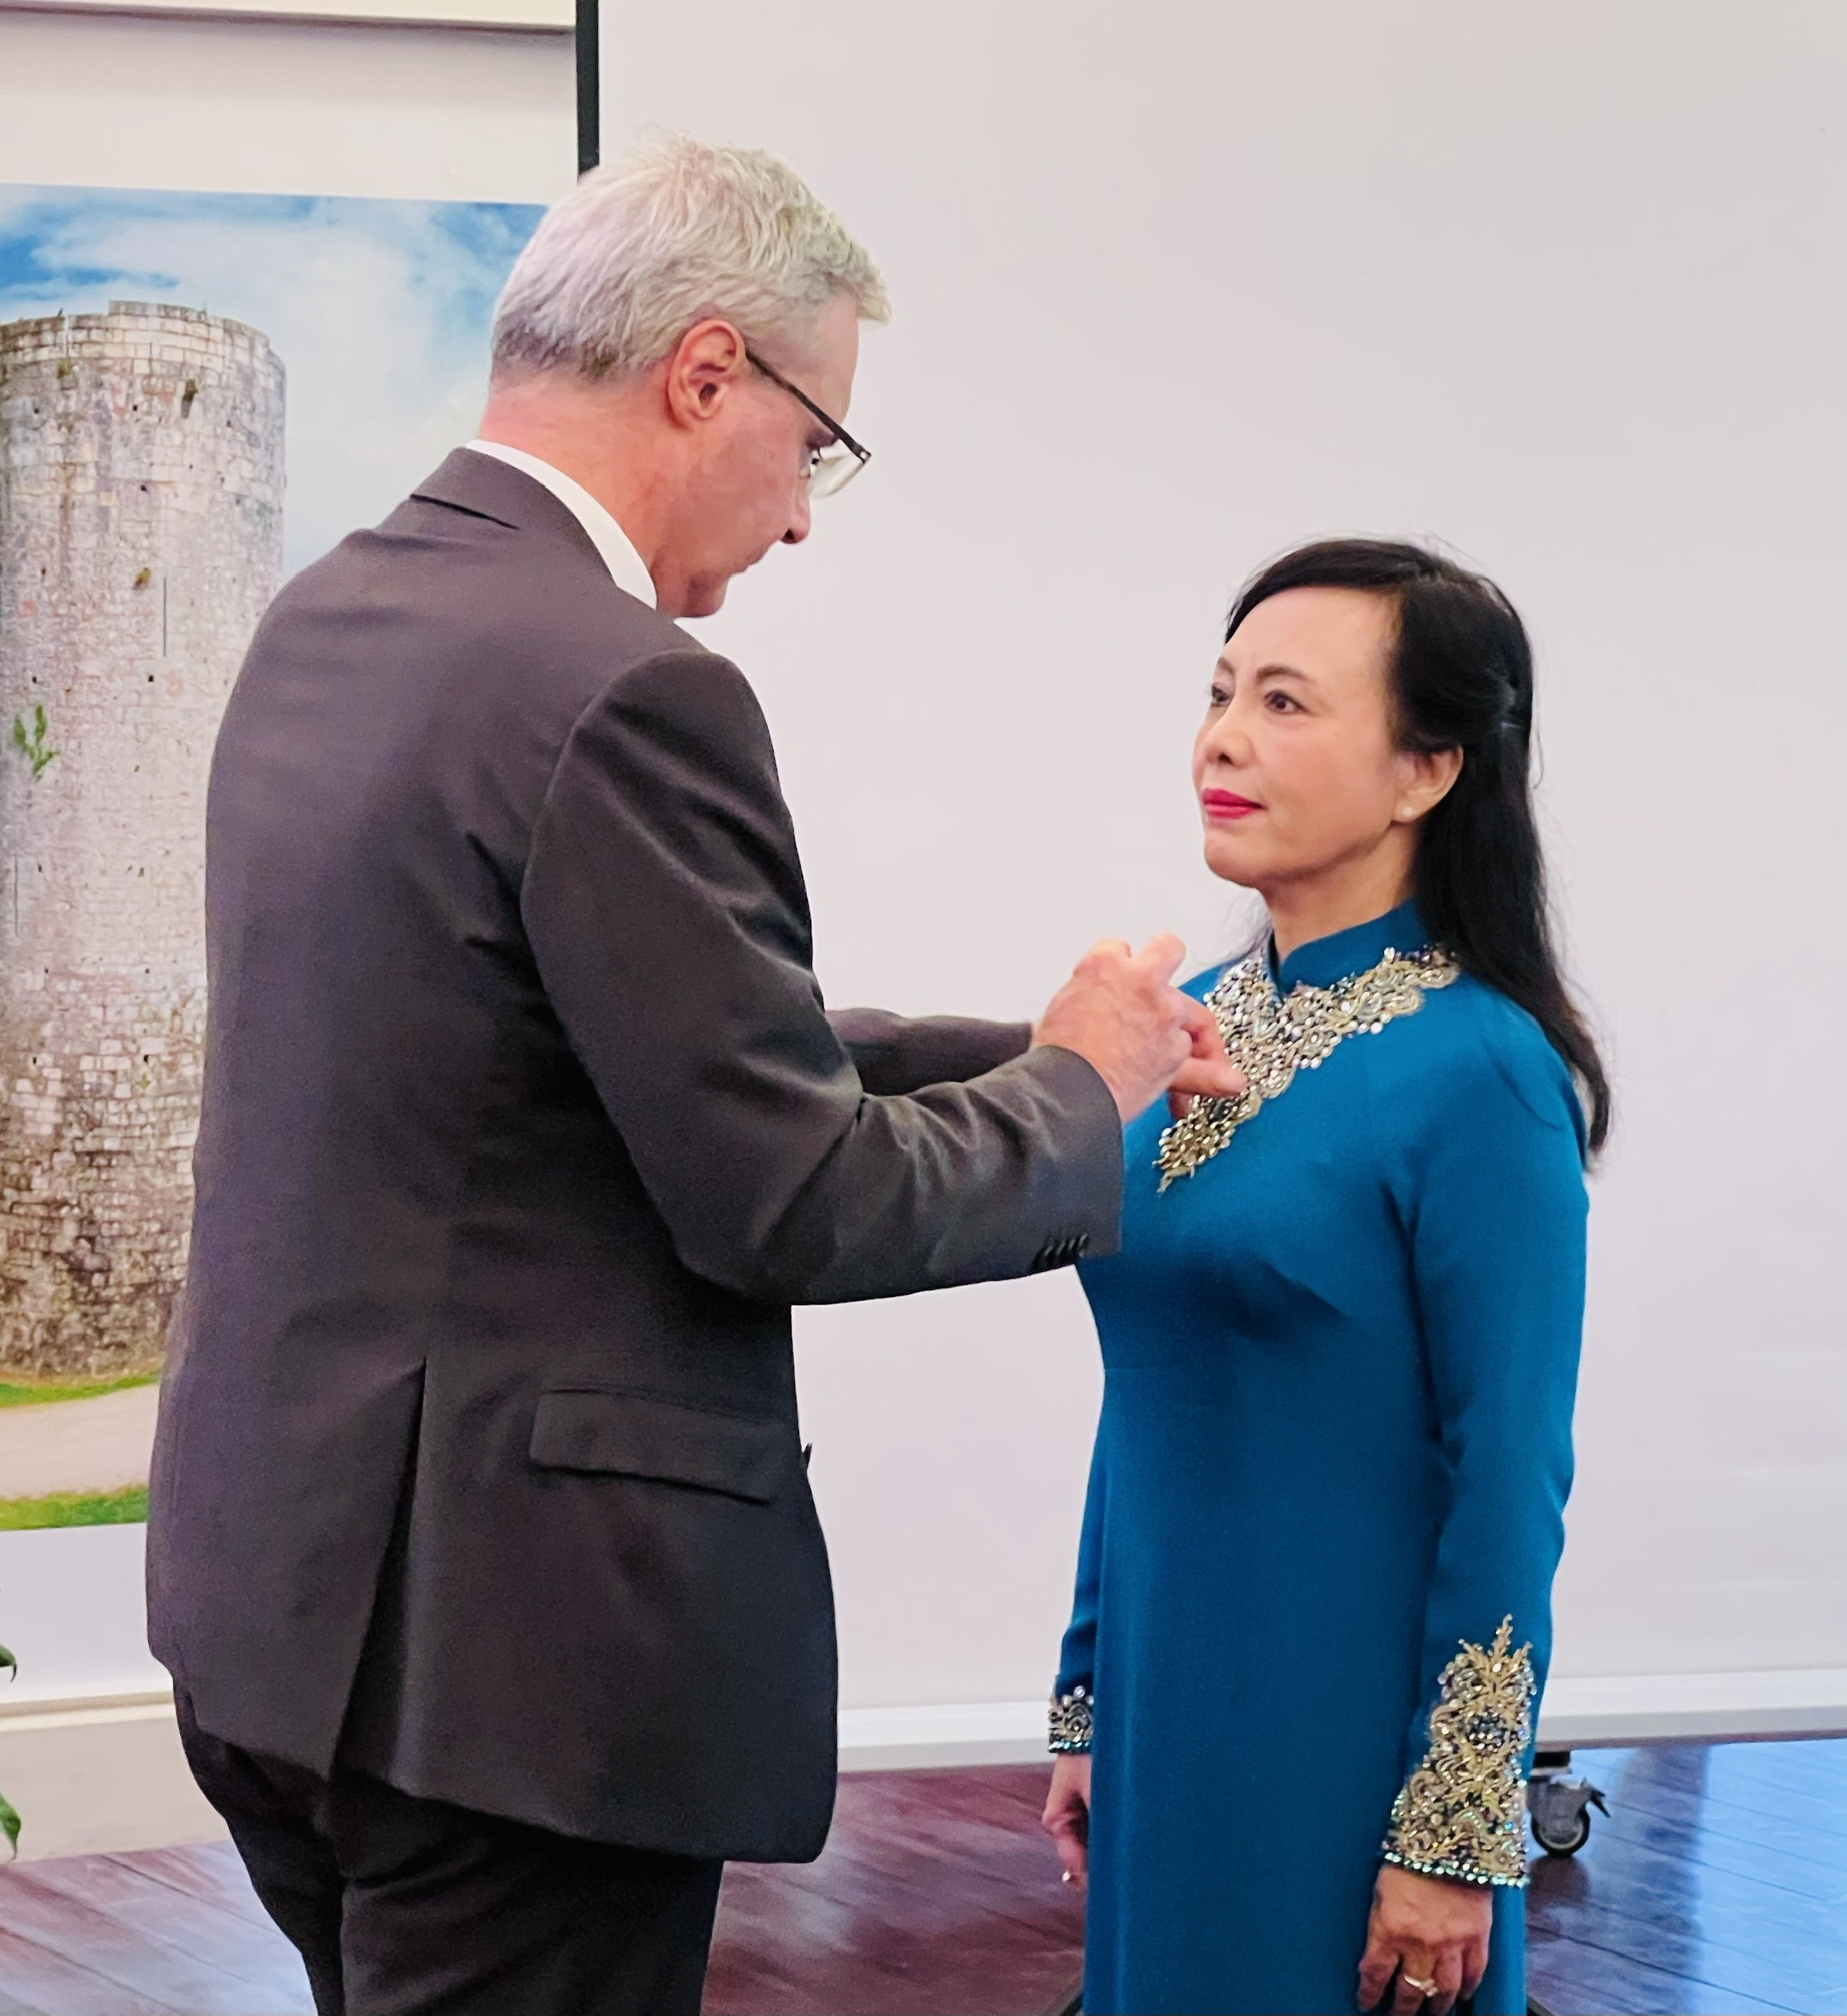 PGS.TS Nguyễn Thị Kim Tiến, nguyên Bộ trưởng Bộ Y tế được nhận Huân chương Bắc Đẩu Bội Tinh lần thứ 2 do Nhà nước Pháp trao tặng